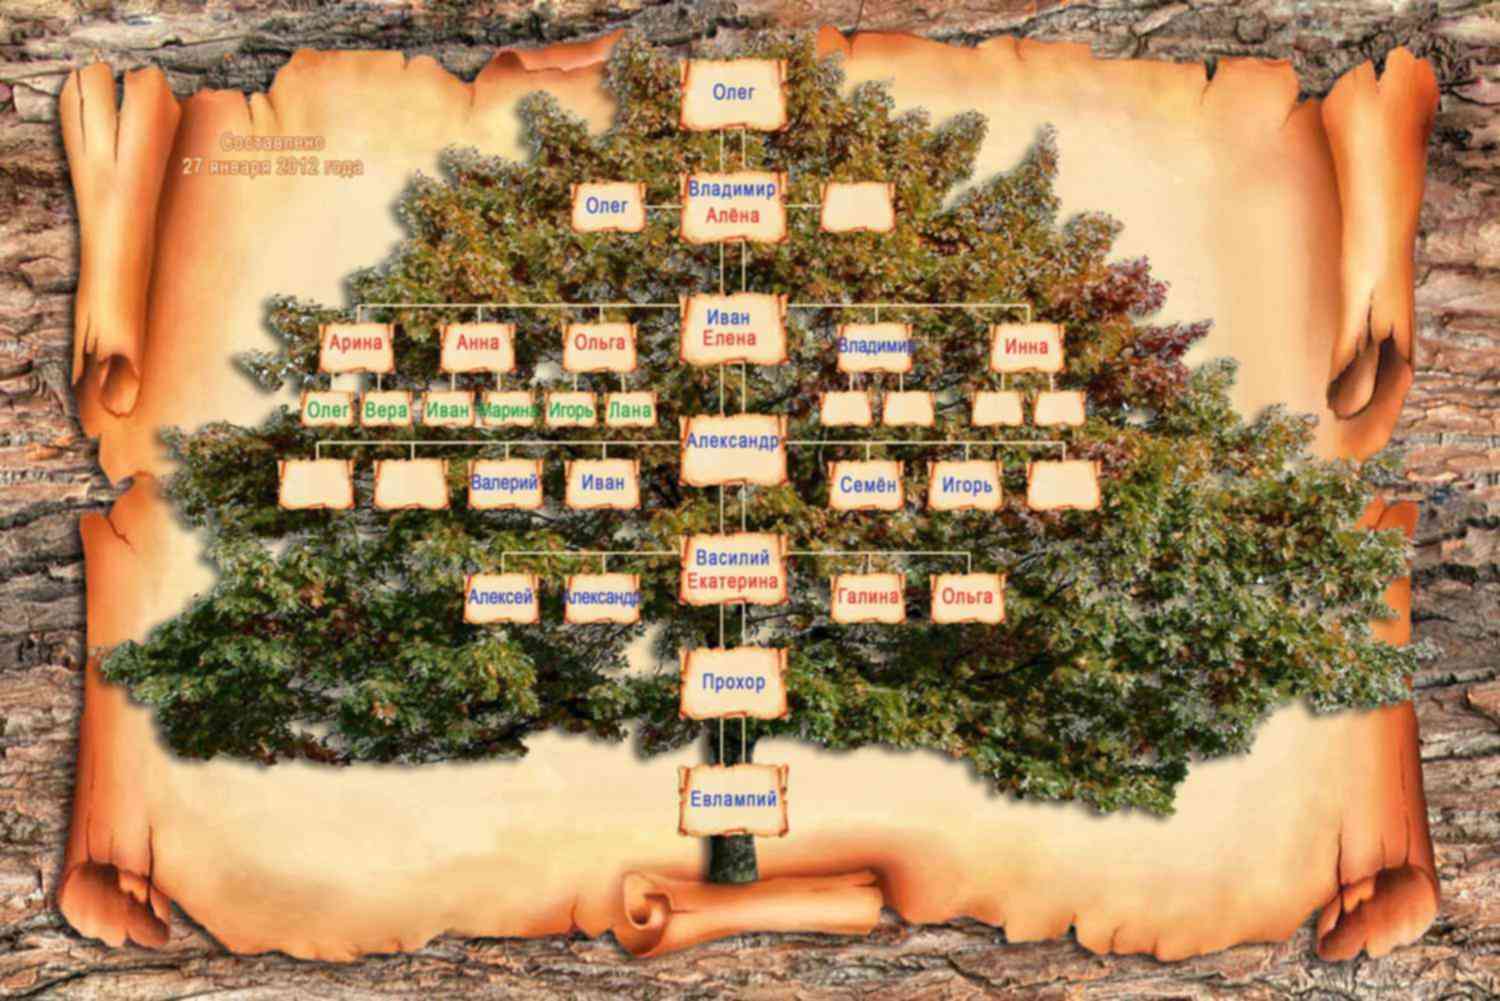 Код генеалогического древа